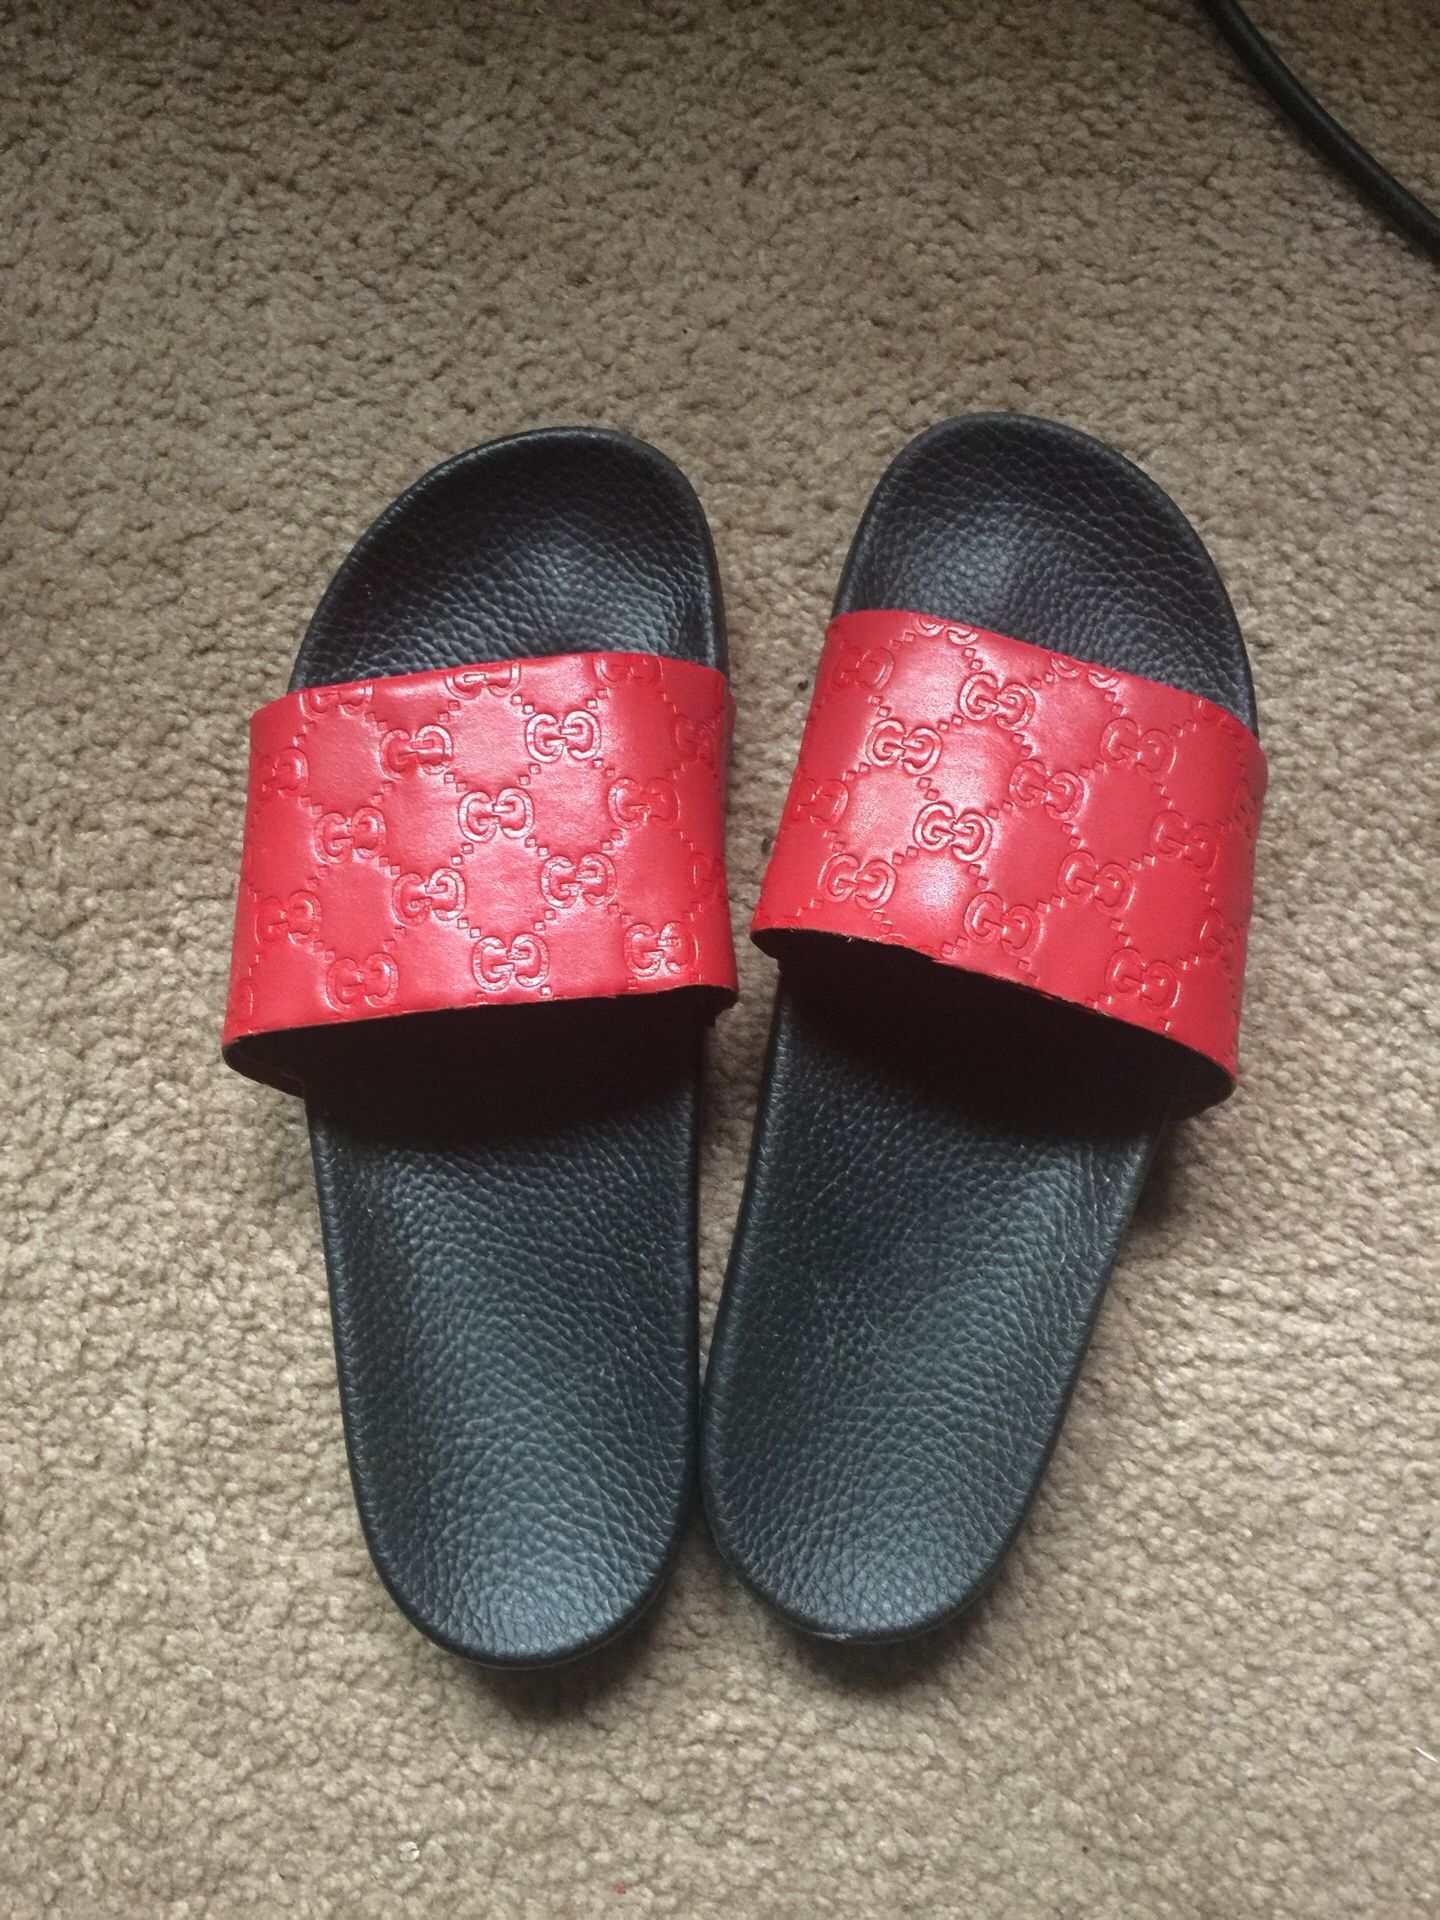 Gucci flip flops (size 10)